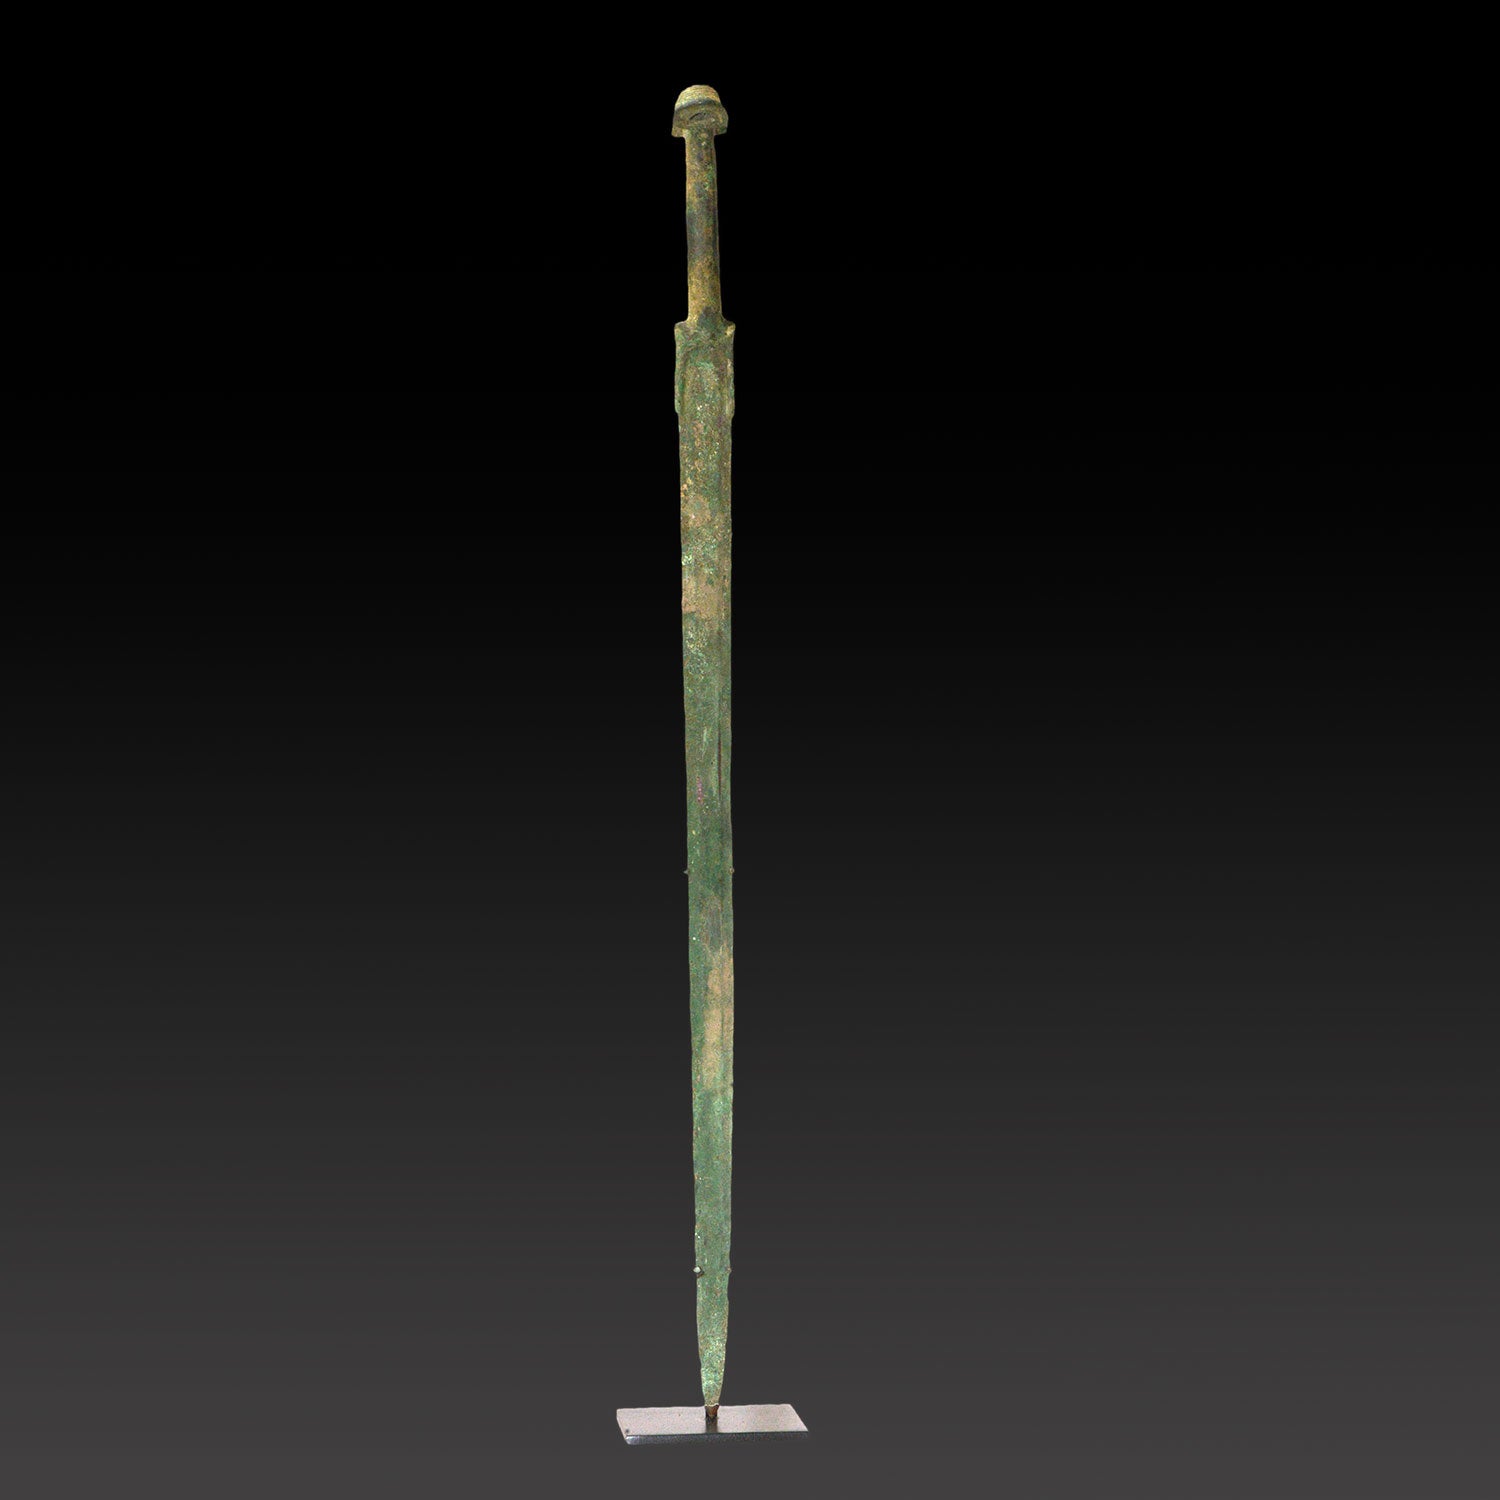 A Near Eastern Bronze "Ear" Pommel Sword, Late Bronze Age, ca. 1200-800 BCE